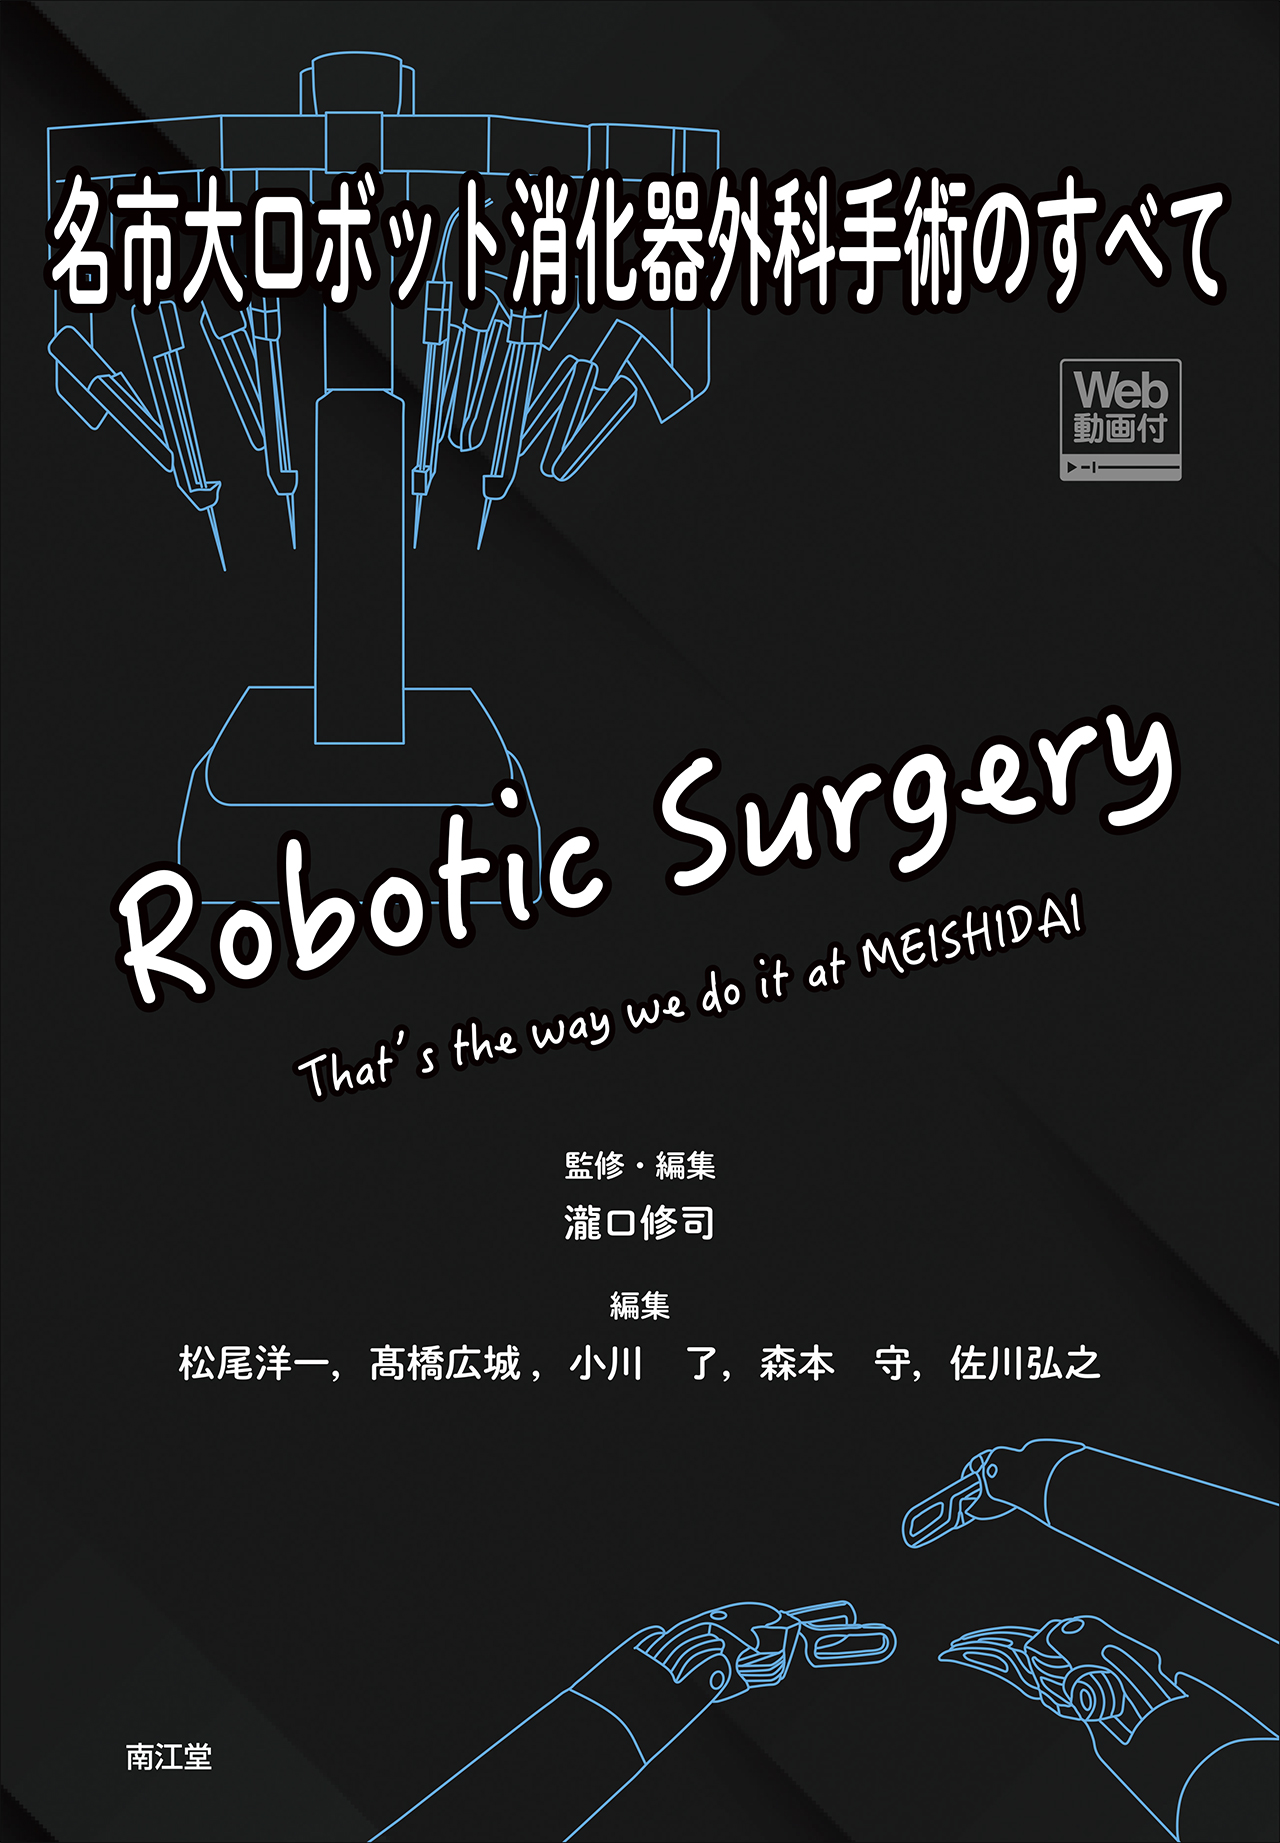 名市大ロボット消化器外科手術のすべて [Web動画付]の商品画像